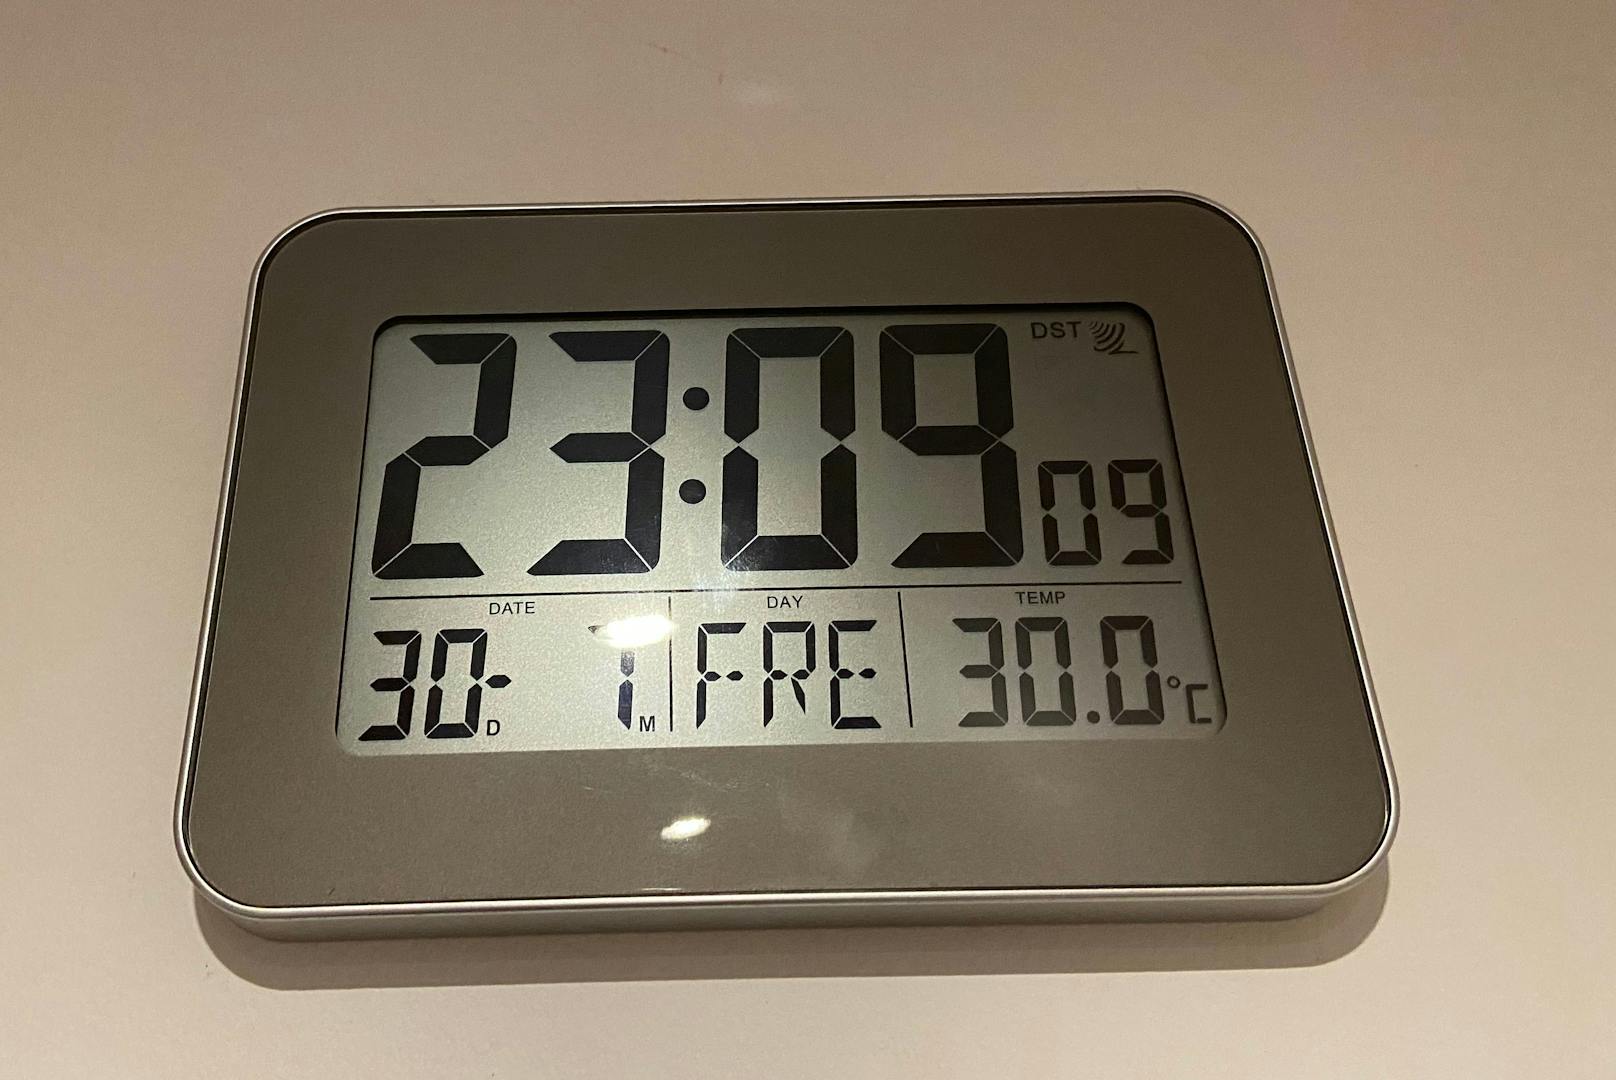 Selbst nach 23 Uhr hat es bei dem Wiener 30 Grad in der Wohnung.